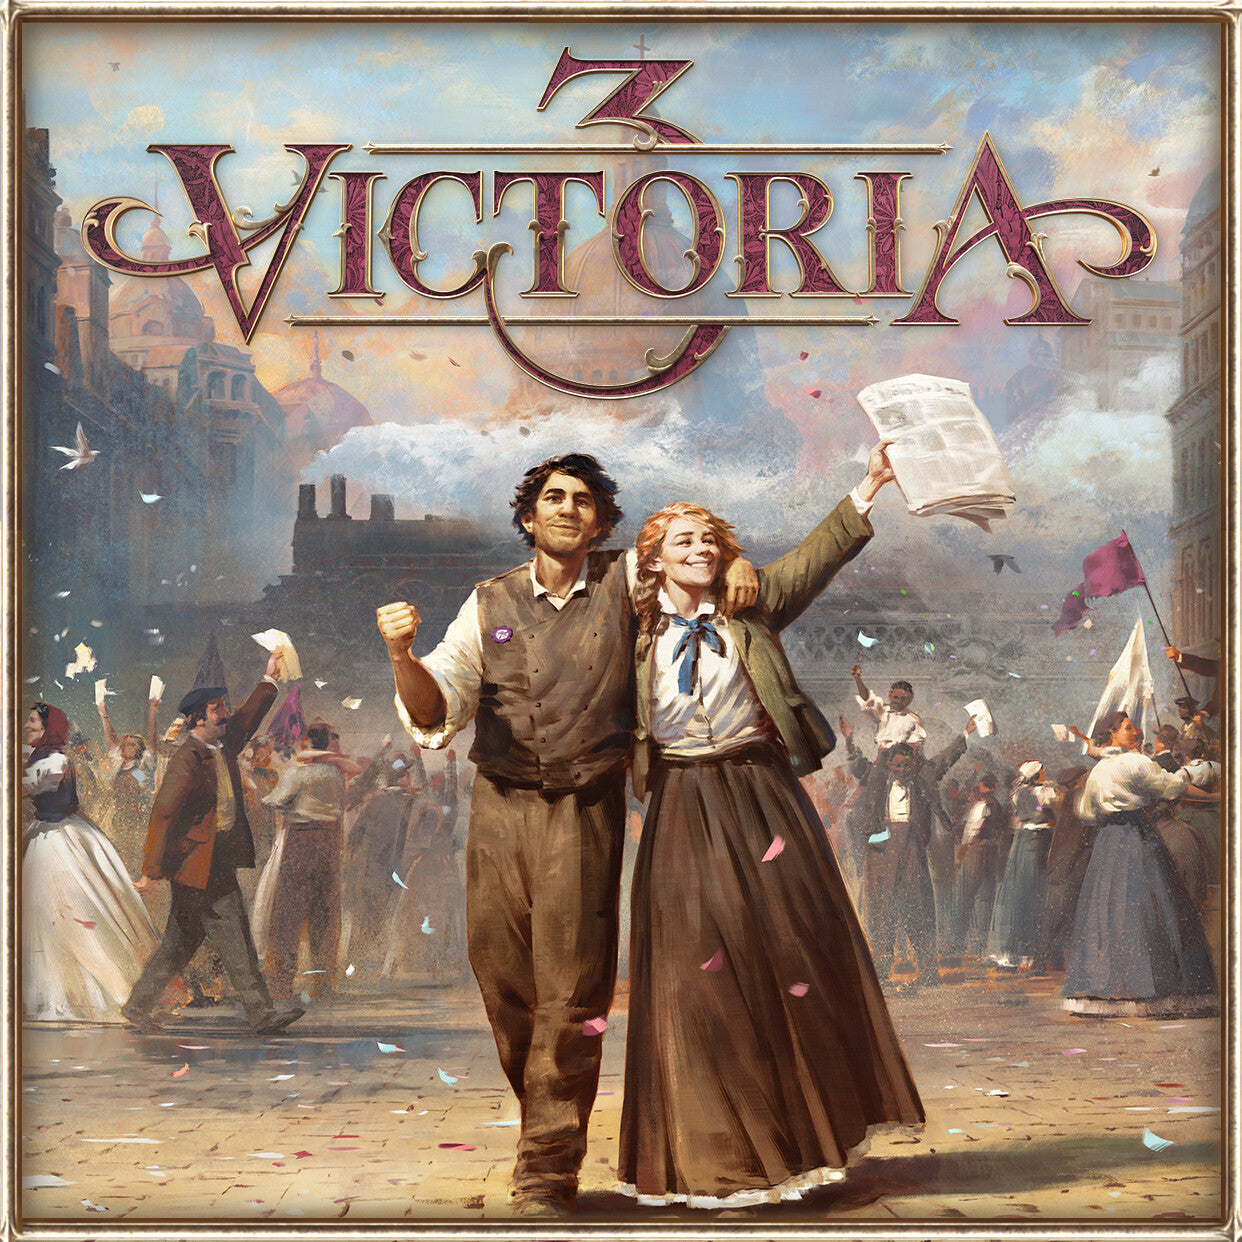 Victoria 3 - Steam (PC)